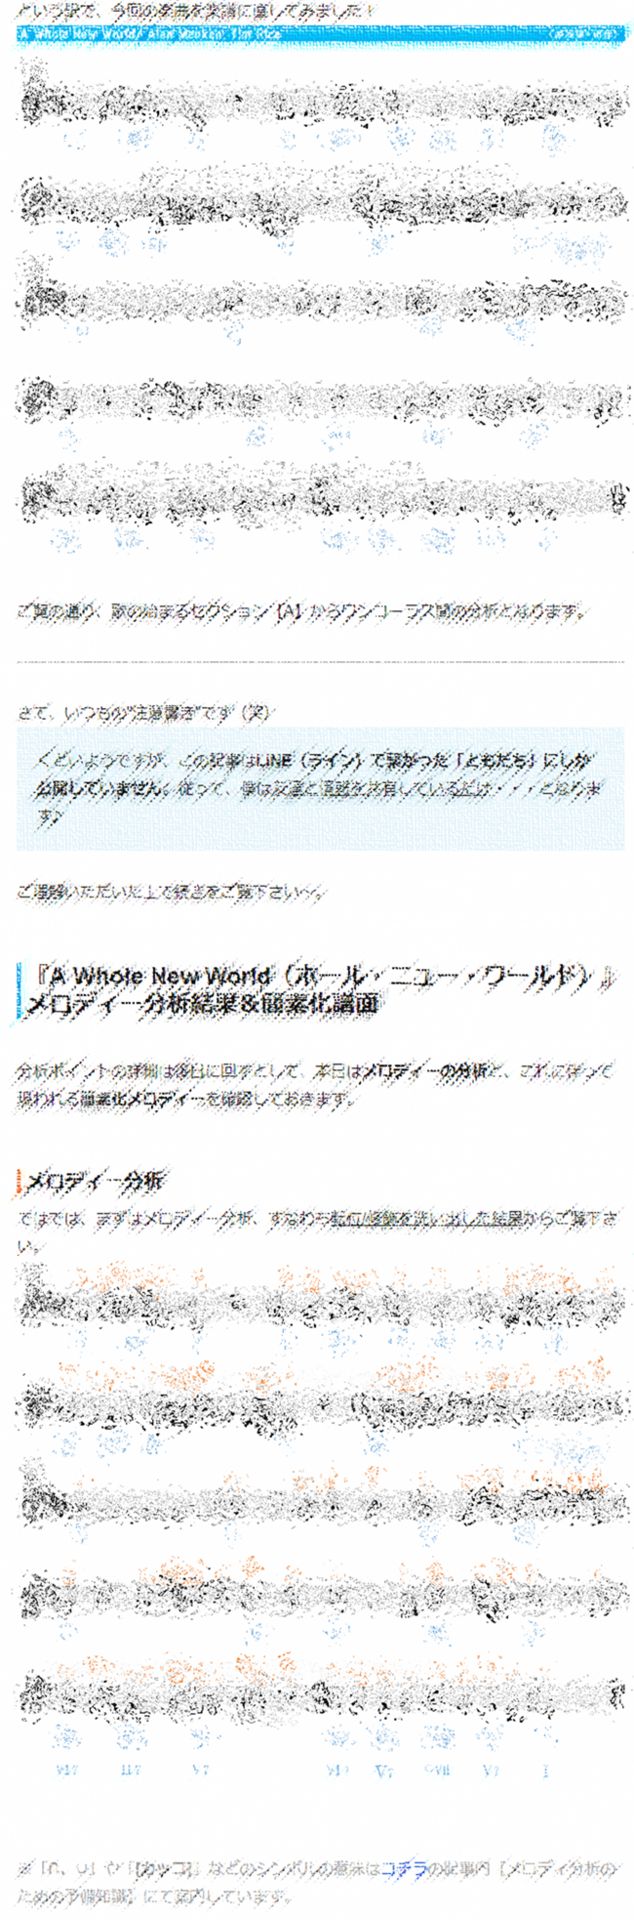 アホー ニュー ワールド 英語 ホール ニューワールドの意味や日本語は アラジン映画の曲